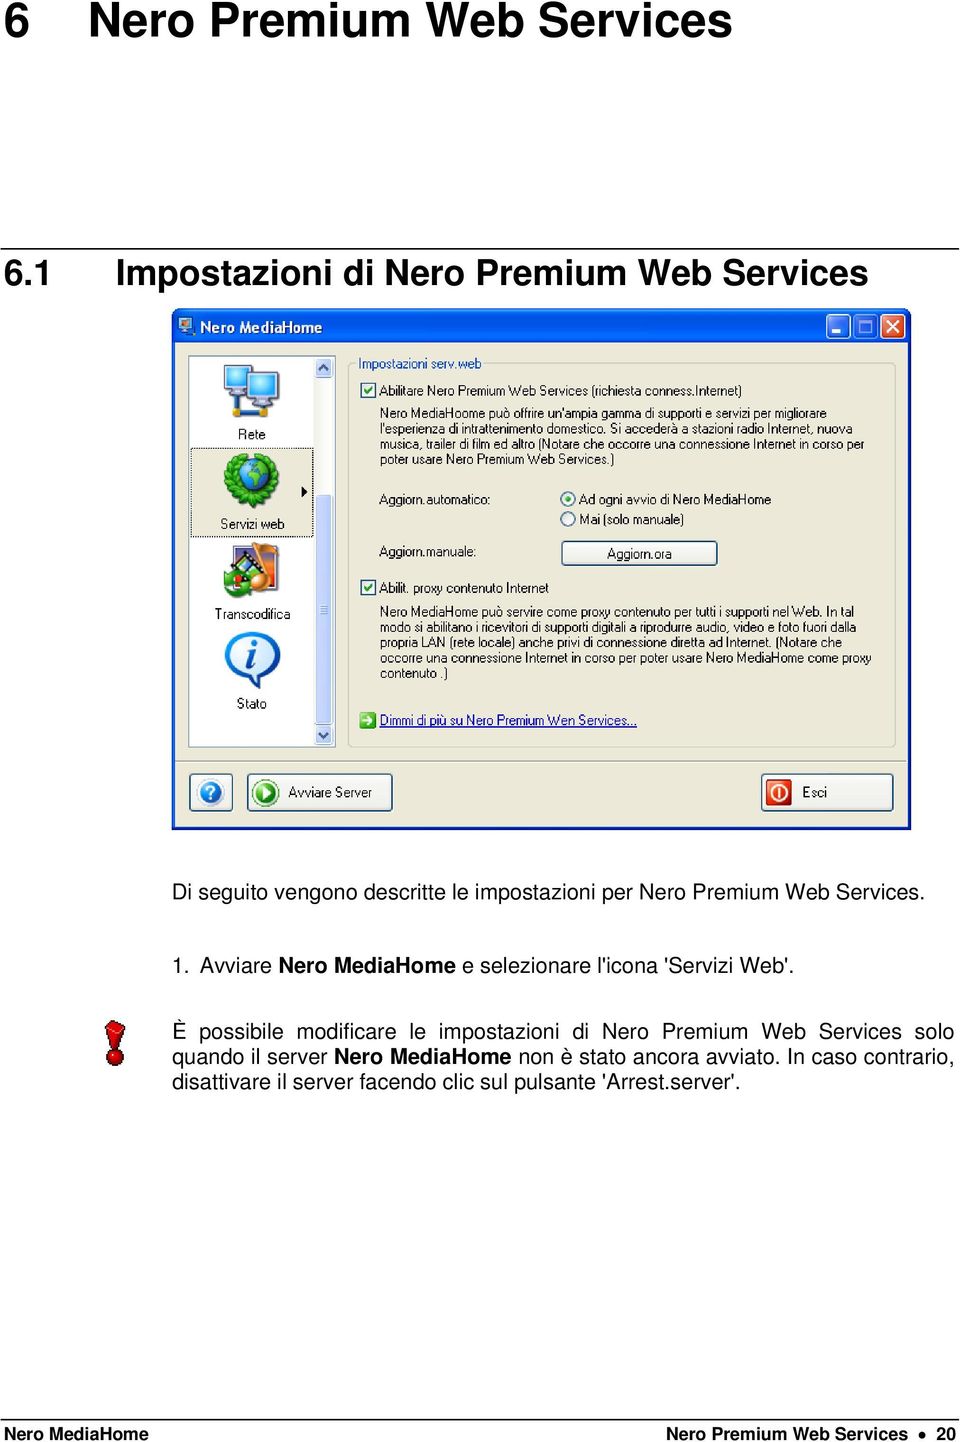 1. Avviare Nero MediaHome e selezionare l'icona 'Servizi Web'.